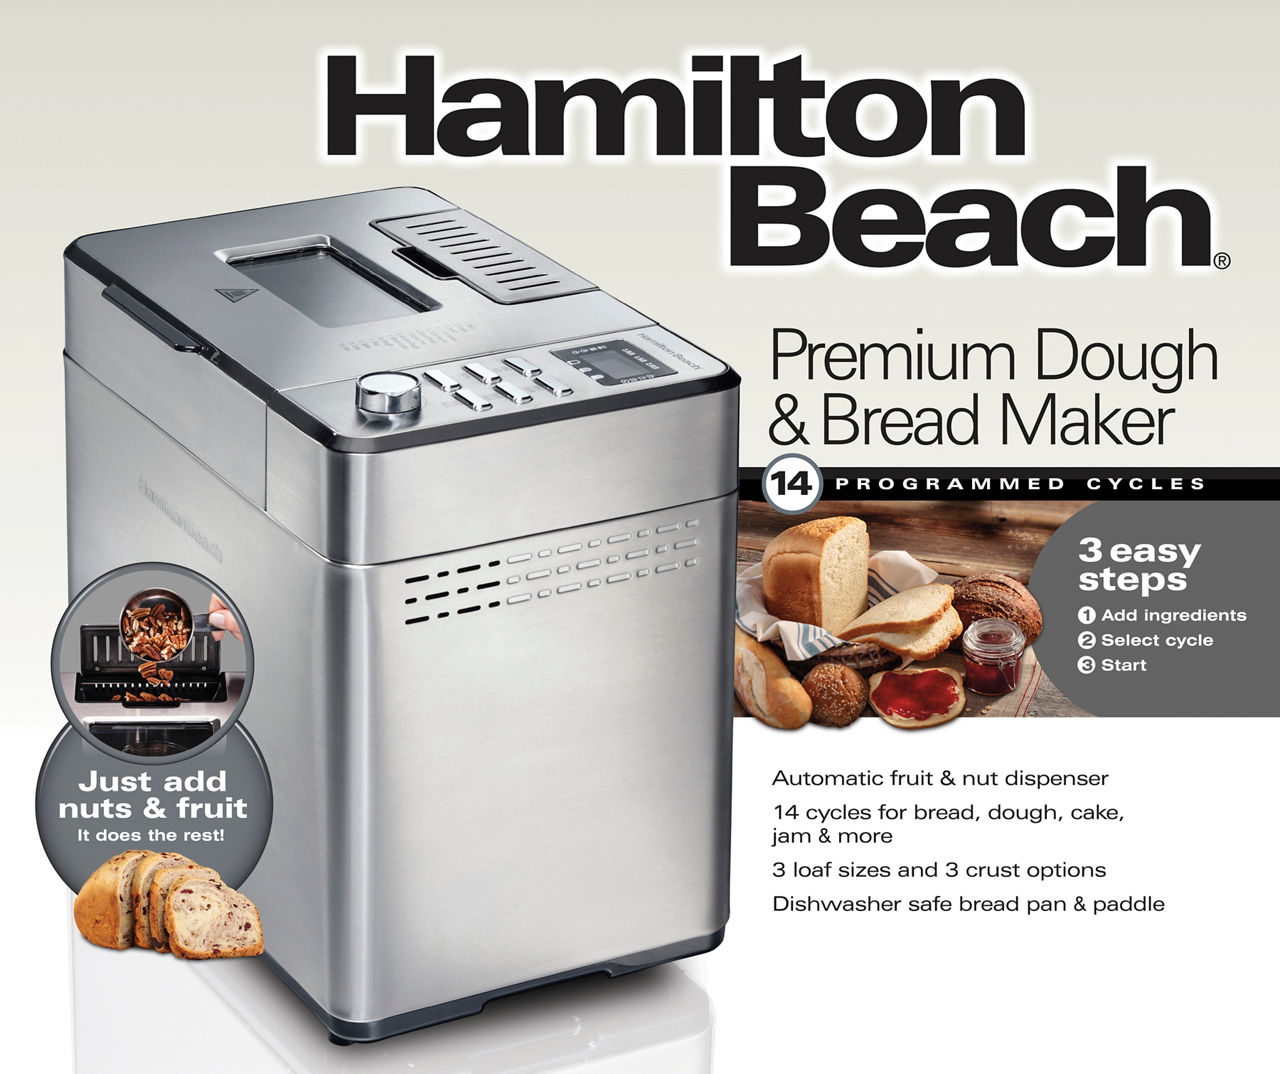 Hamilton Beach Premium Dough & Bread Maker